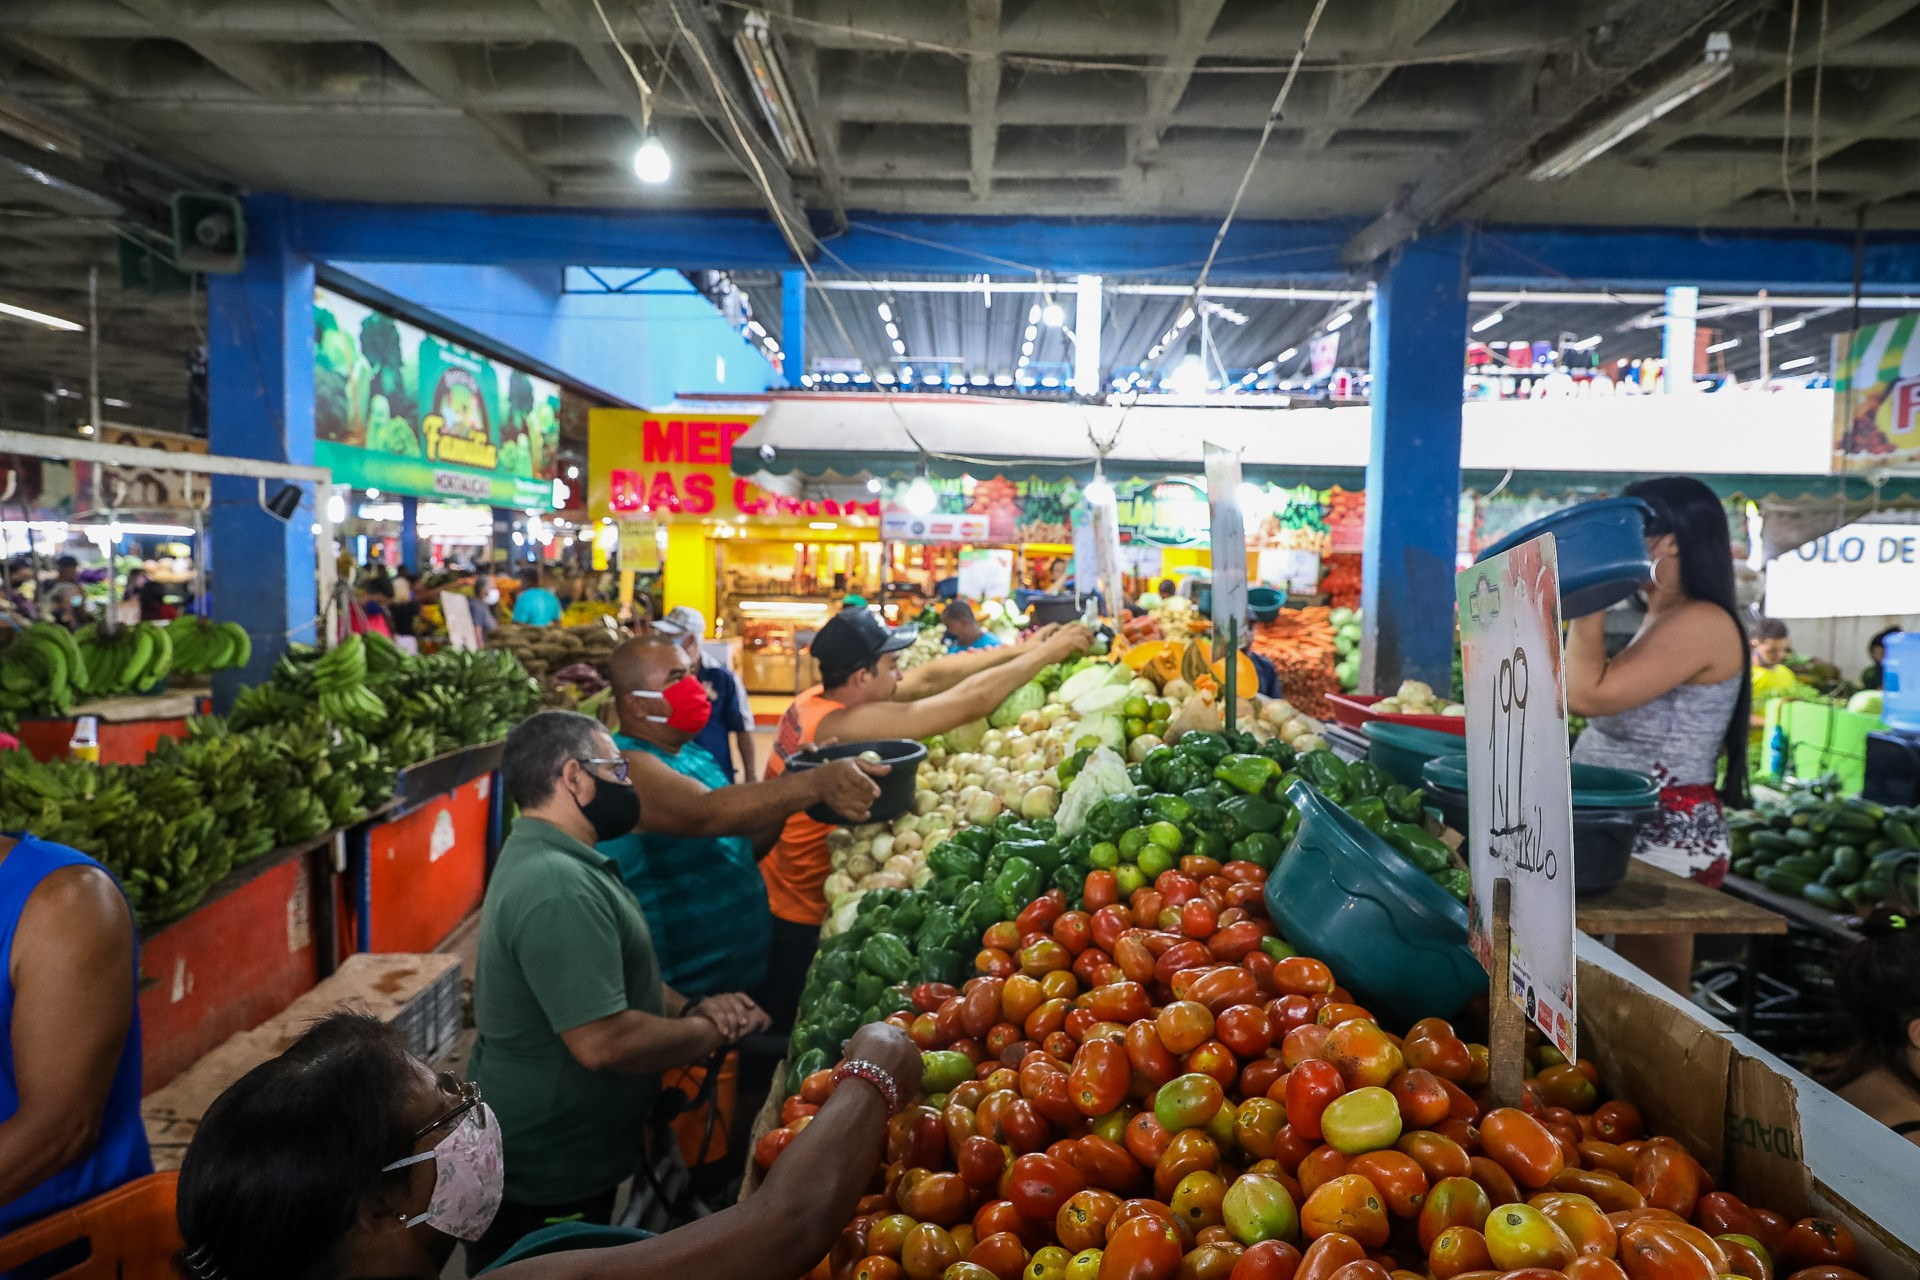 Foto tirada no mercado municipal de Jaboatão dos Guararapes, em Pernambuco, mostra consumidores selecionando cebolas, pimentões, tomates e outros vegetais, enquanto uma feirante observa a cena